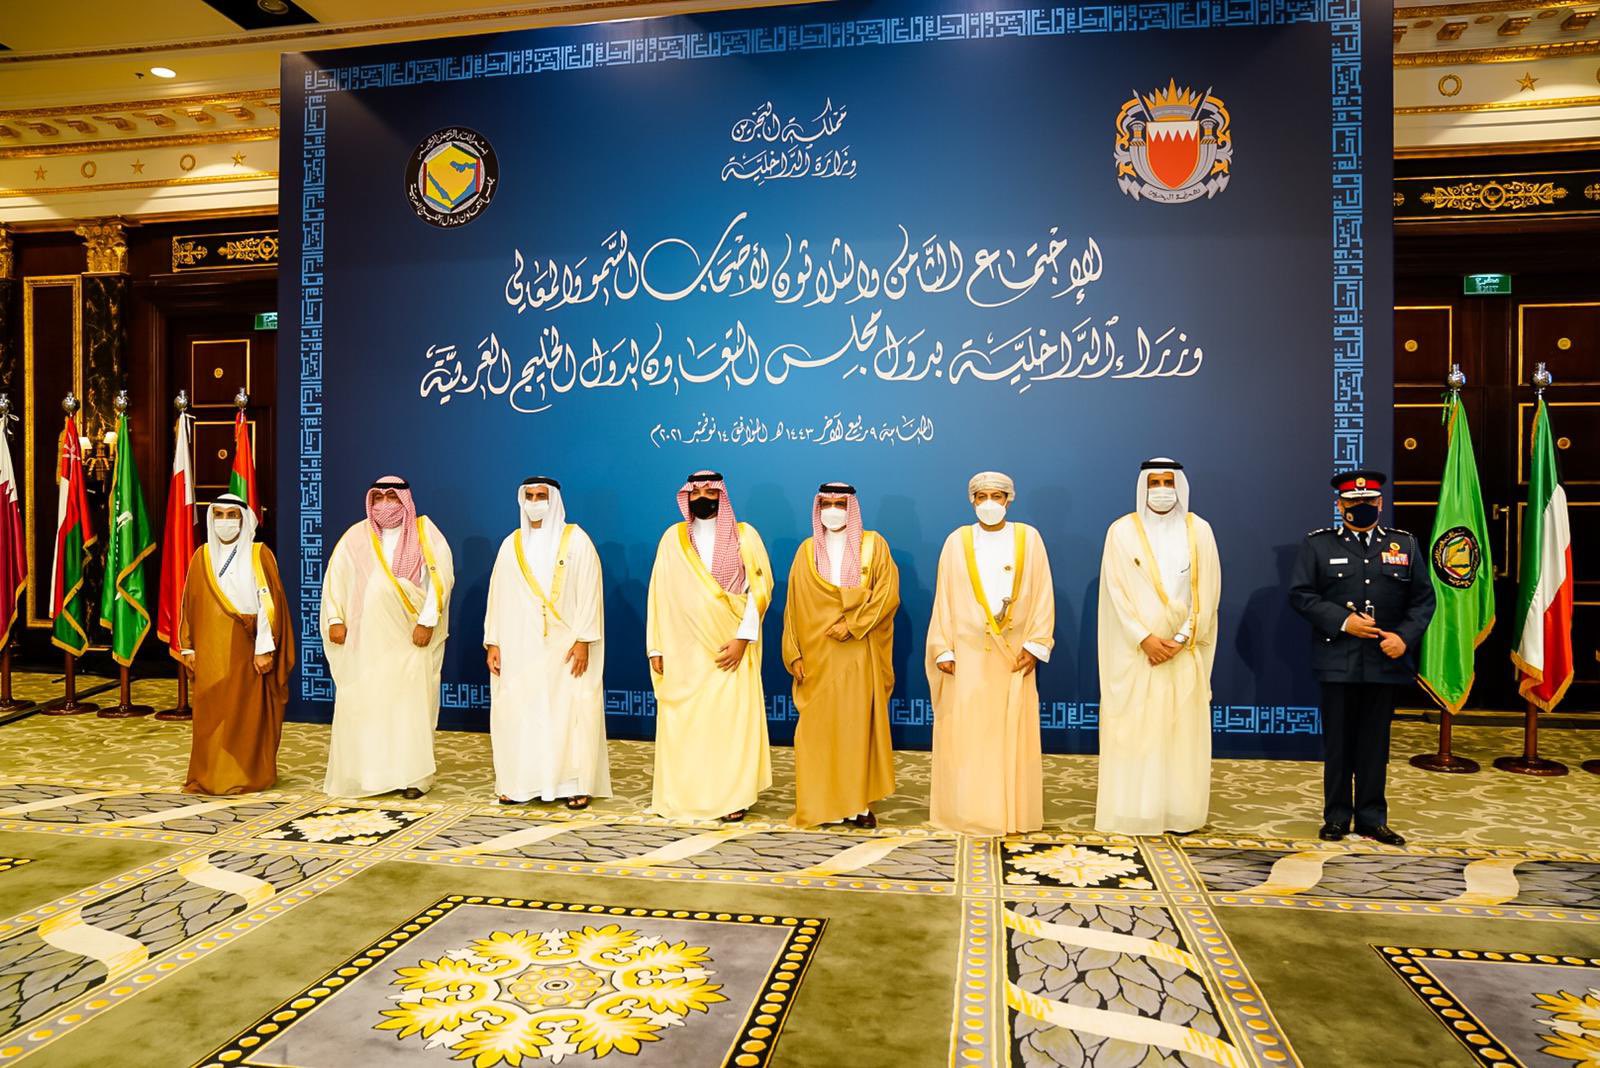 دولة قطر تخفض مستوى تمثيلها في اجتماع وزراء الداخلية بدول مجلس التعاون في البحرين watanserb.com